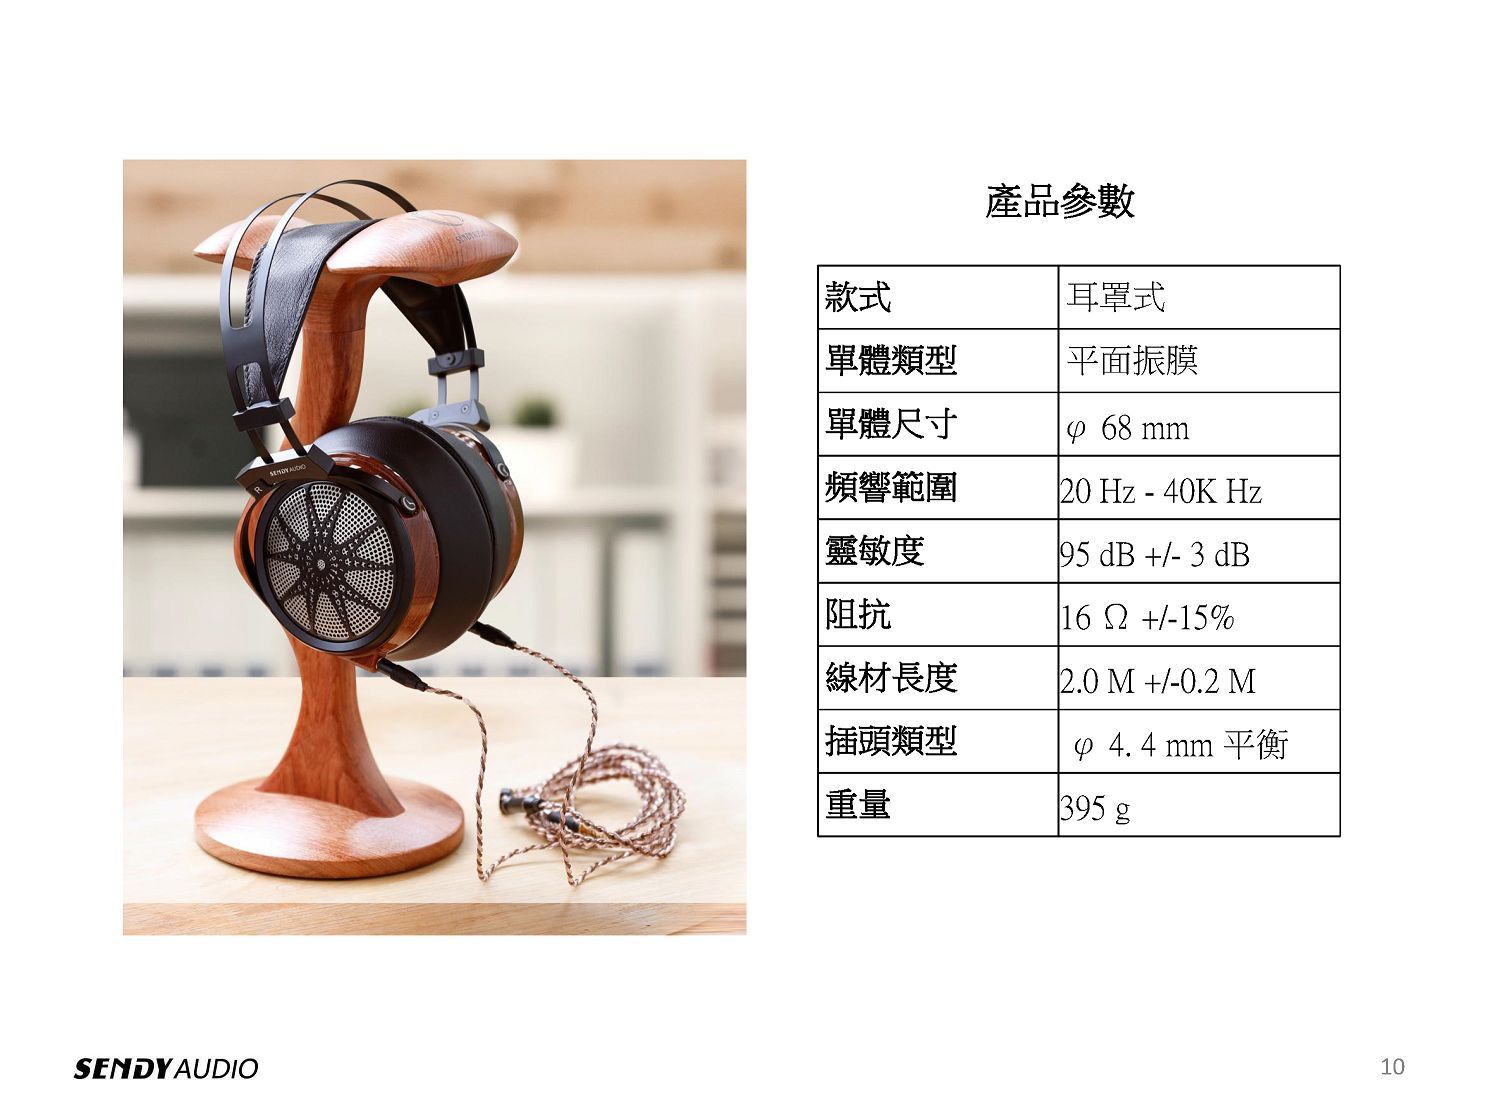 SENDY AUDIO款式產品參數 耳罩式平面振膜單體類型單體尺寸468 mm頻響範圍20 Hz - 40K Hz靈敏度|阻抗線材長度|插頭類型重量95 dB +/- 3 dB162+/-15%2.0 M +/-0.2 M 4.4 mm 平衡395 g10